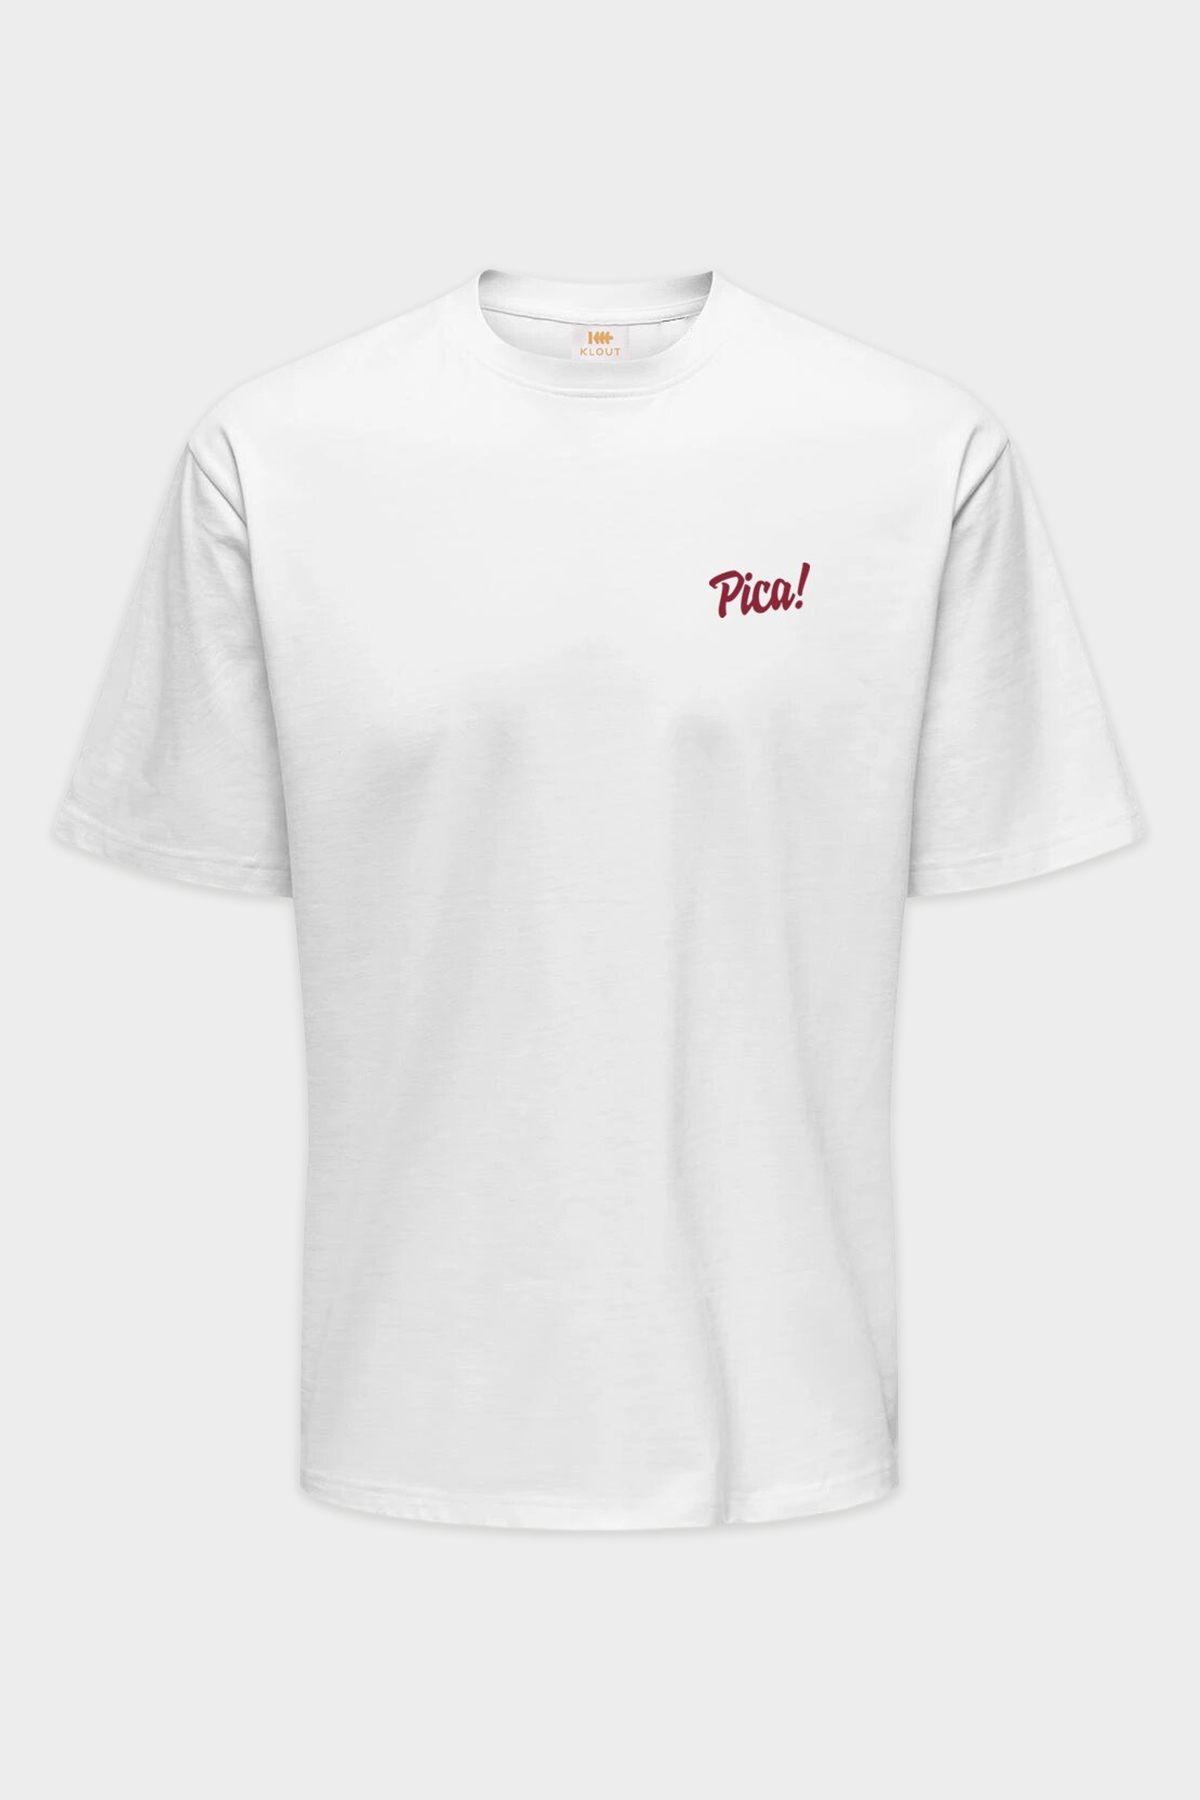 Camiseta Klout Pica Blanco Para Hombre y Mujer